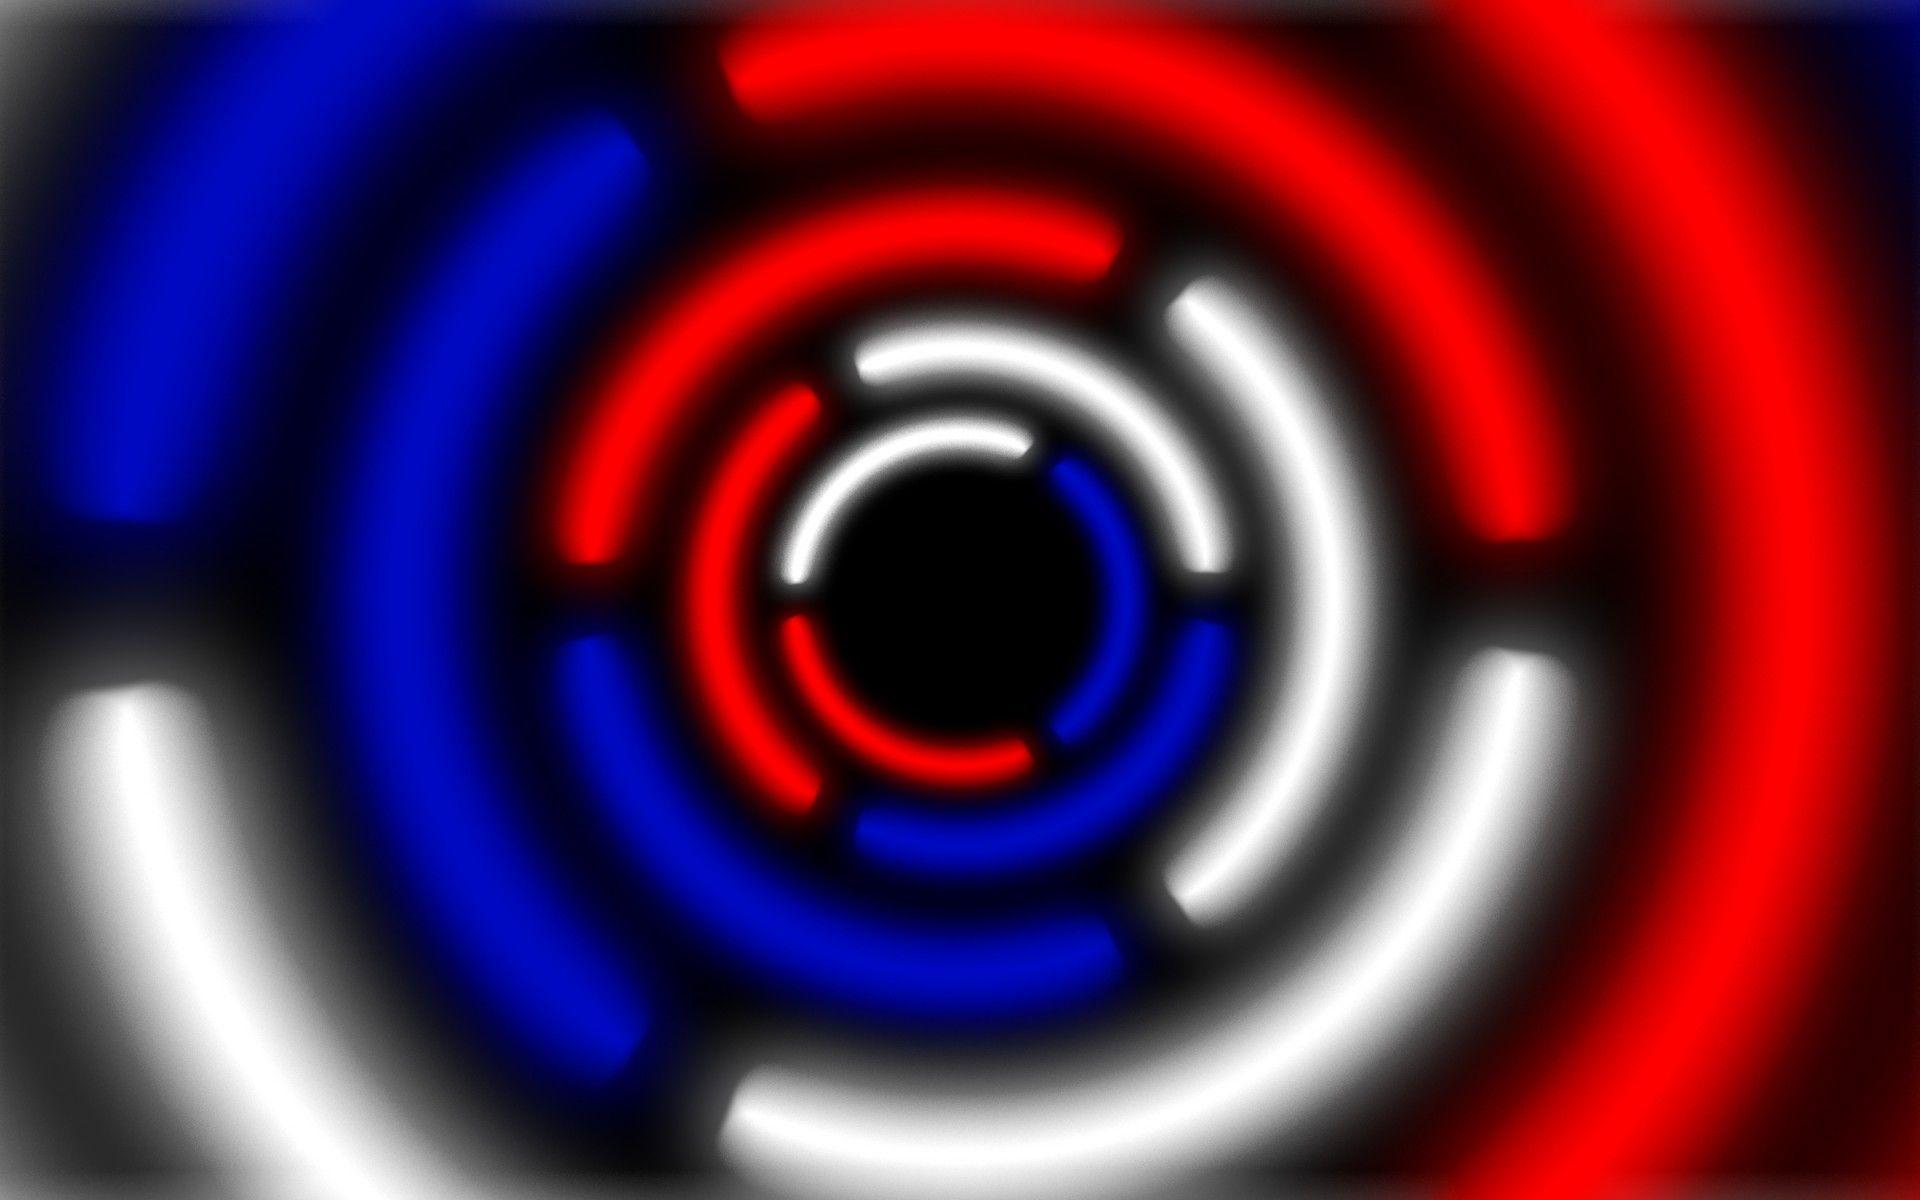 Red White and Blue Circular Logo - Circle krug Russia russia white blue red white blue red abstract ...